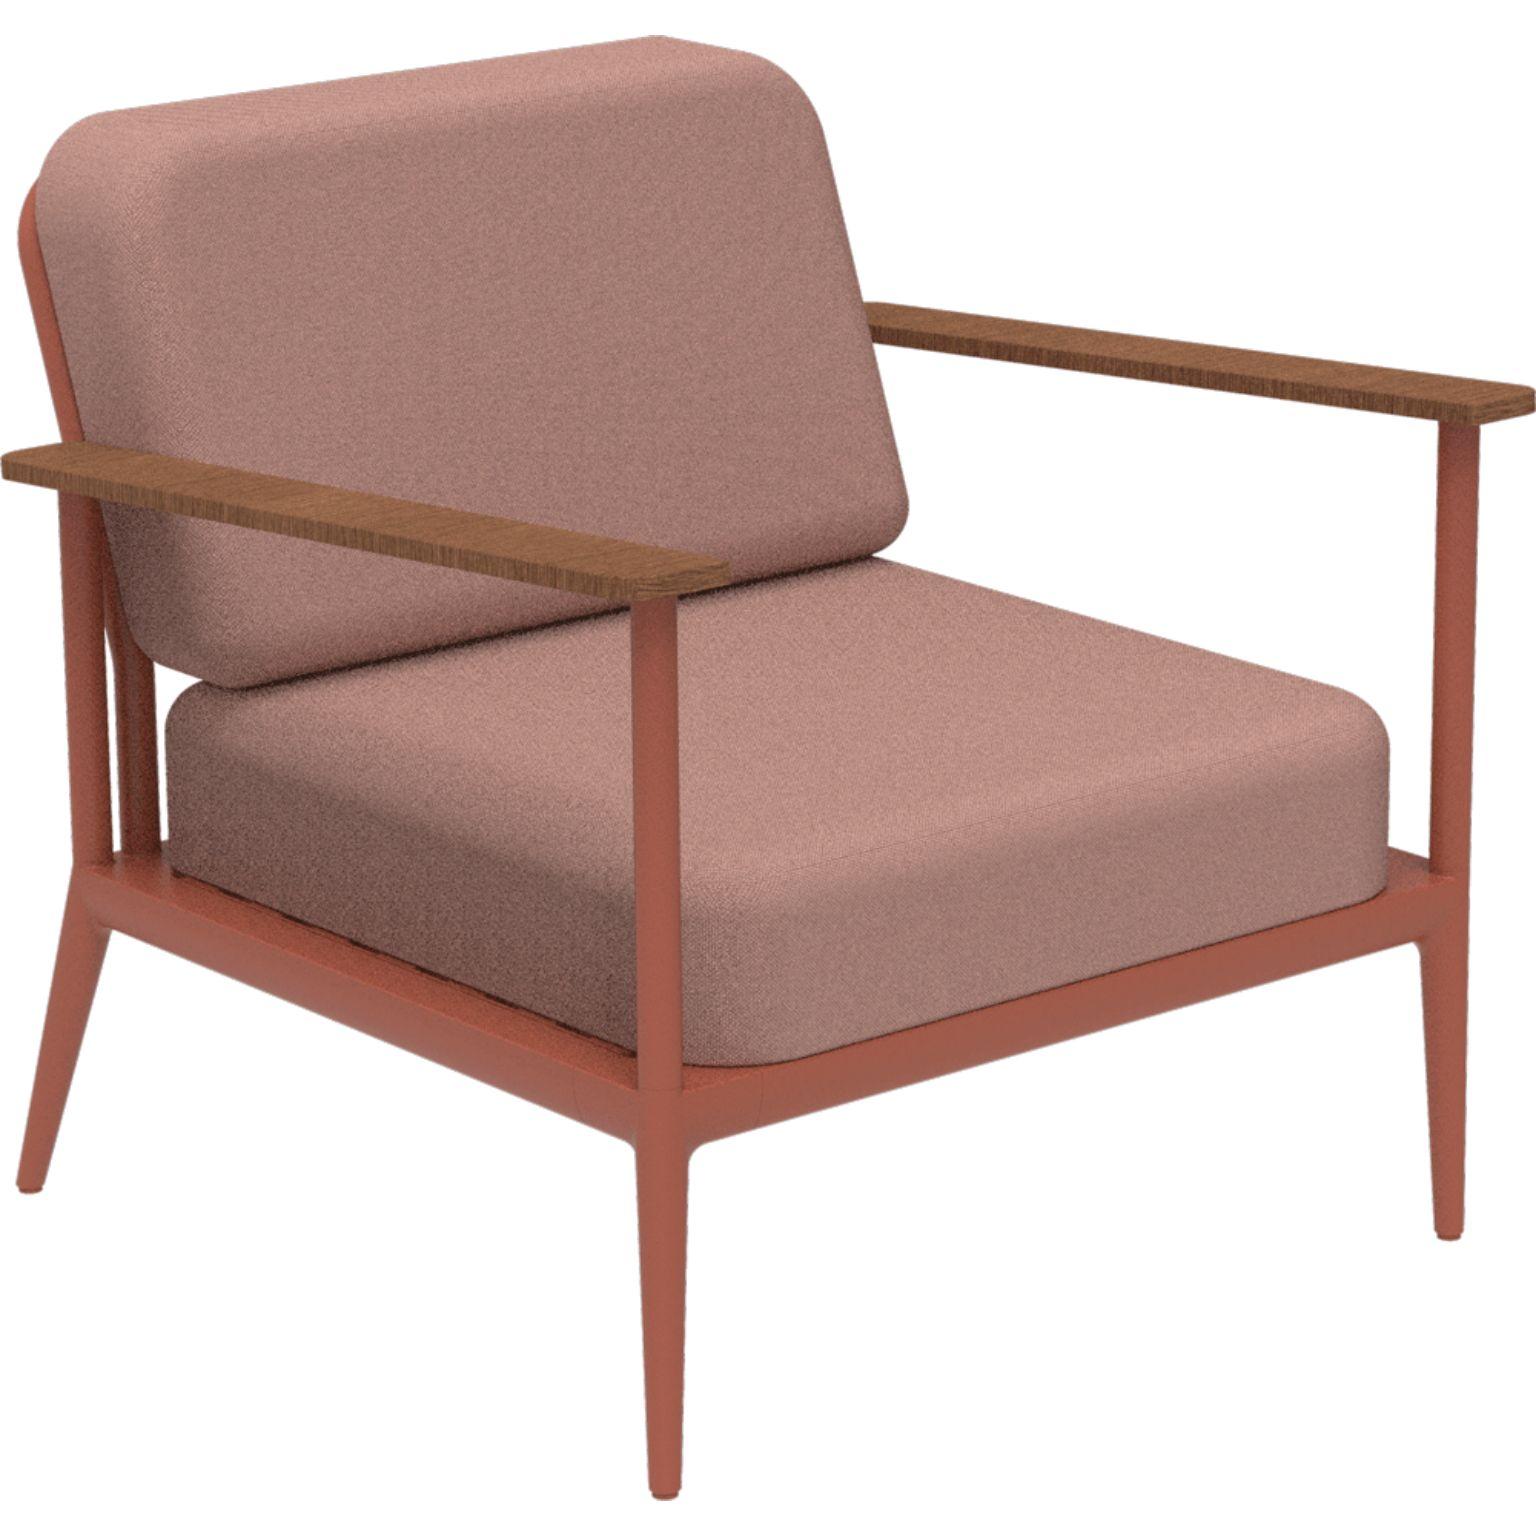 Nature lachsfarbener Longue-Stuhl von MOWEE.
Abmessungen: T85 x B83 x H81 cm (Sitzhöhe 42 cm).
MATERIAL: Aluminium, Polsterung und Iroko-Holz.
Gewicht: 20 kg.
Auch in verschiedenen Farben und Ausführungen erhältlich.

Eine Collection'S, die durch